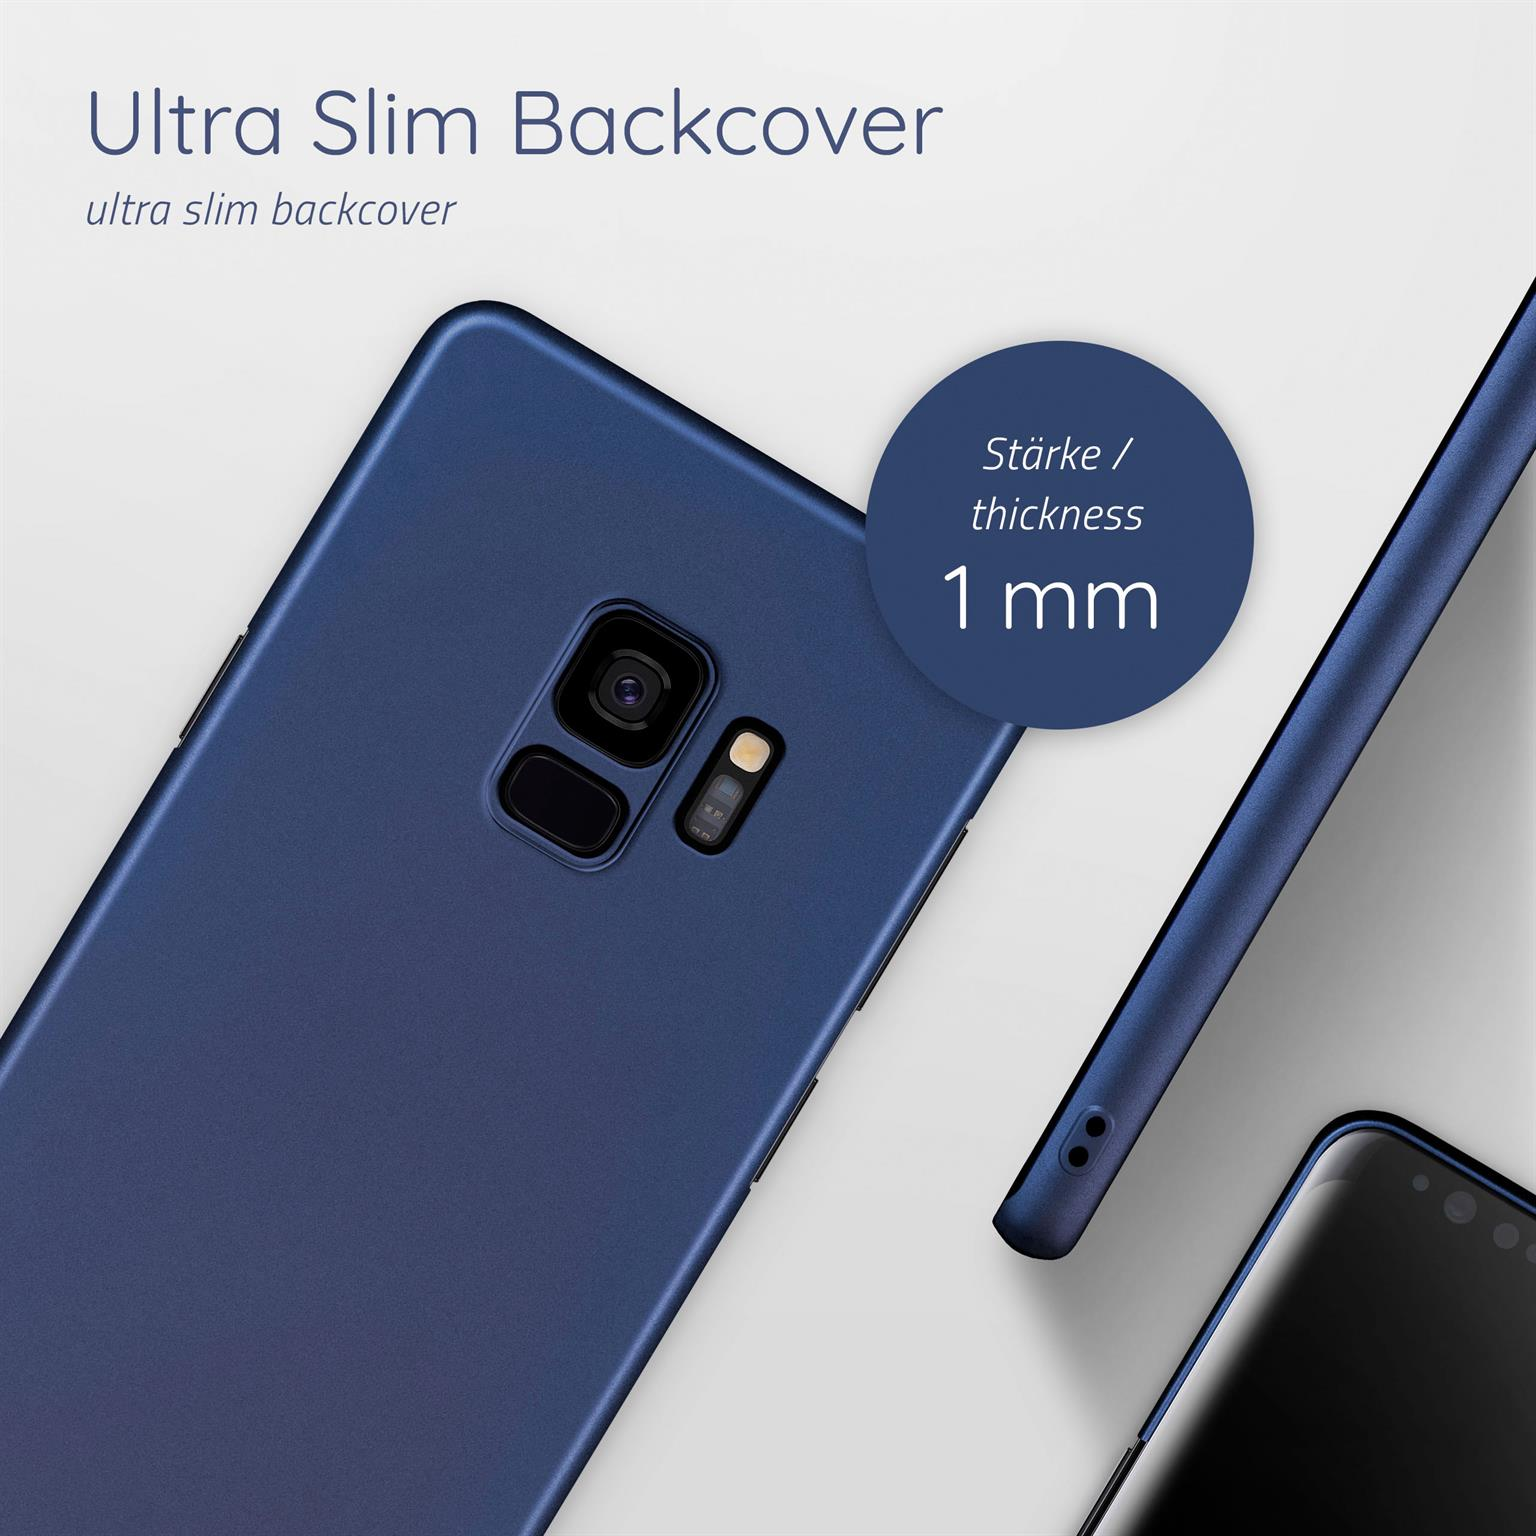 Backcover, Alpha S9, Case, MOEX Samsung, Blau Galaxy